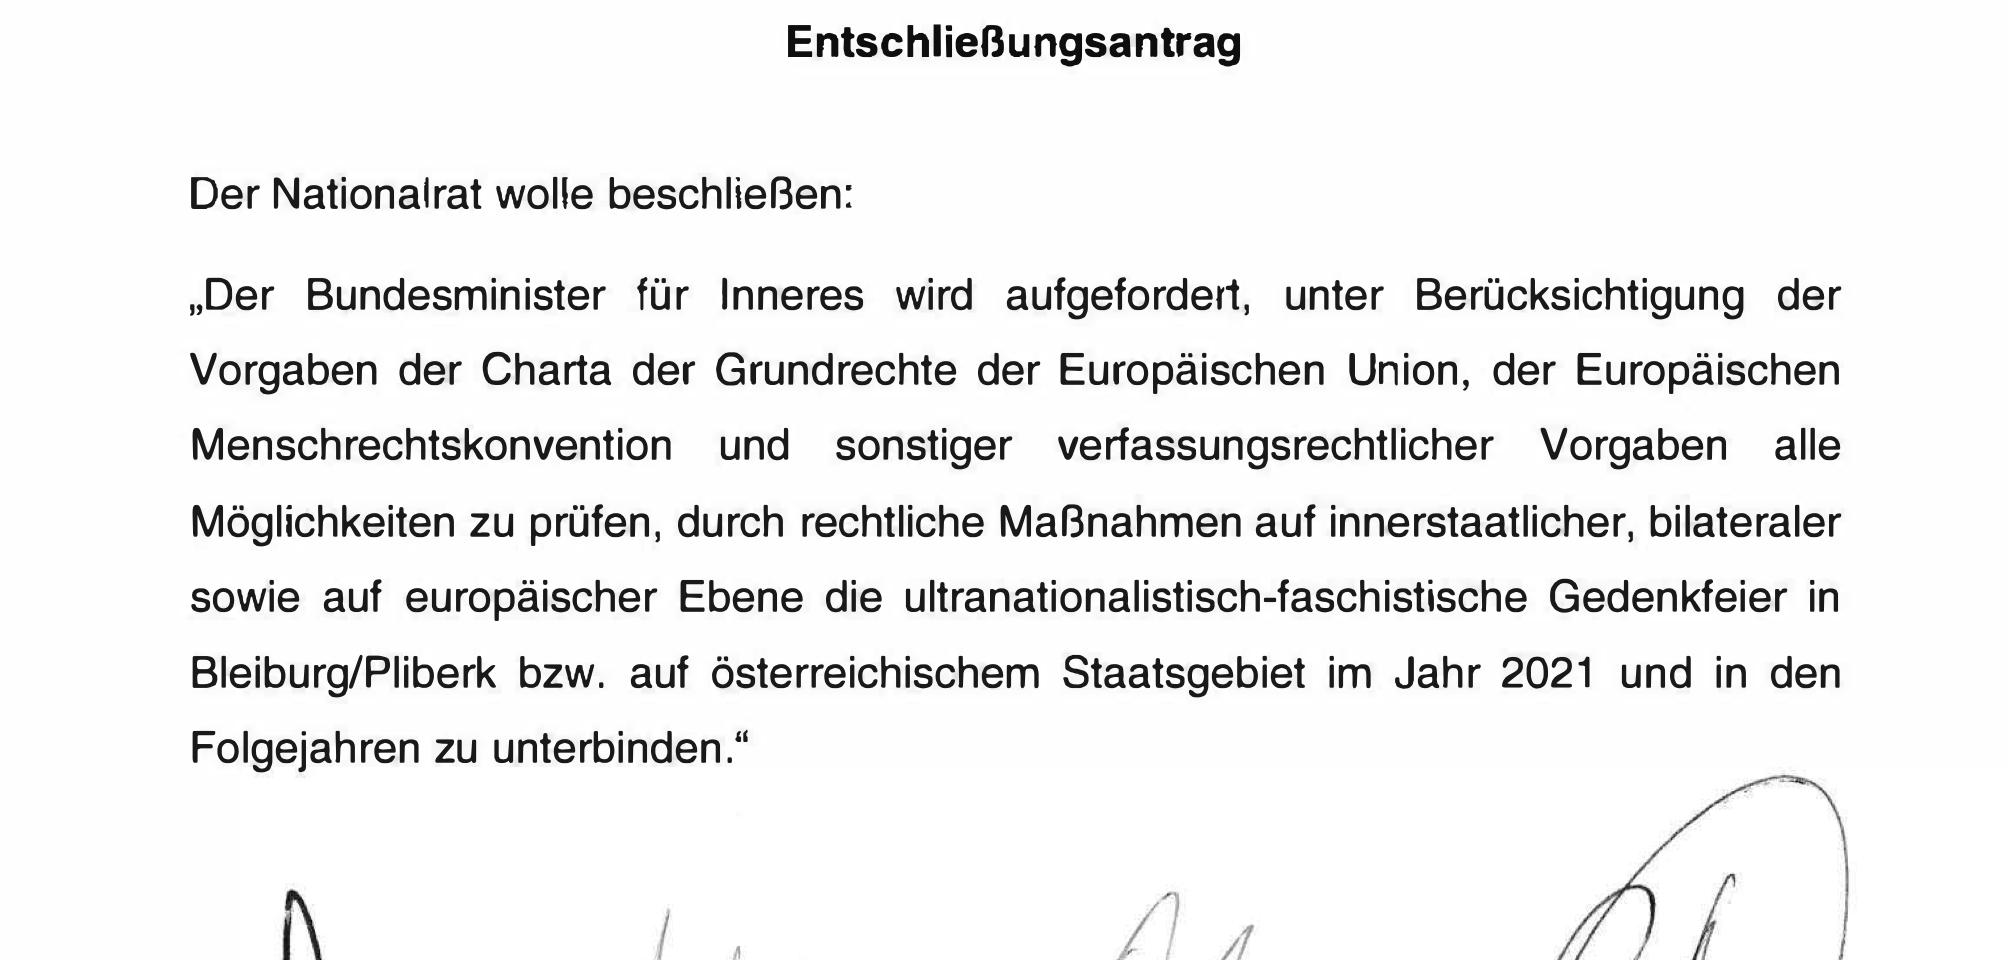 Entschließungsantrag zum Ustascha-Treffen in Bleiburg/Pliberk